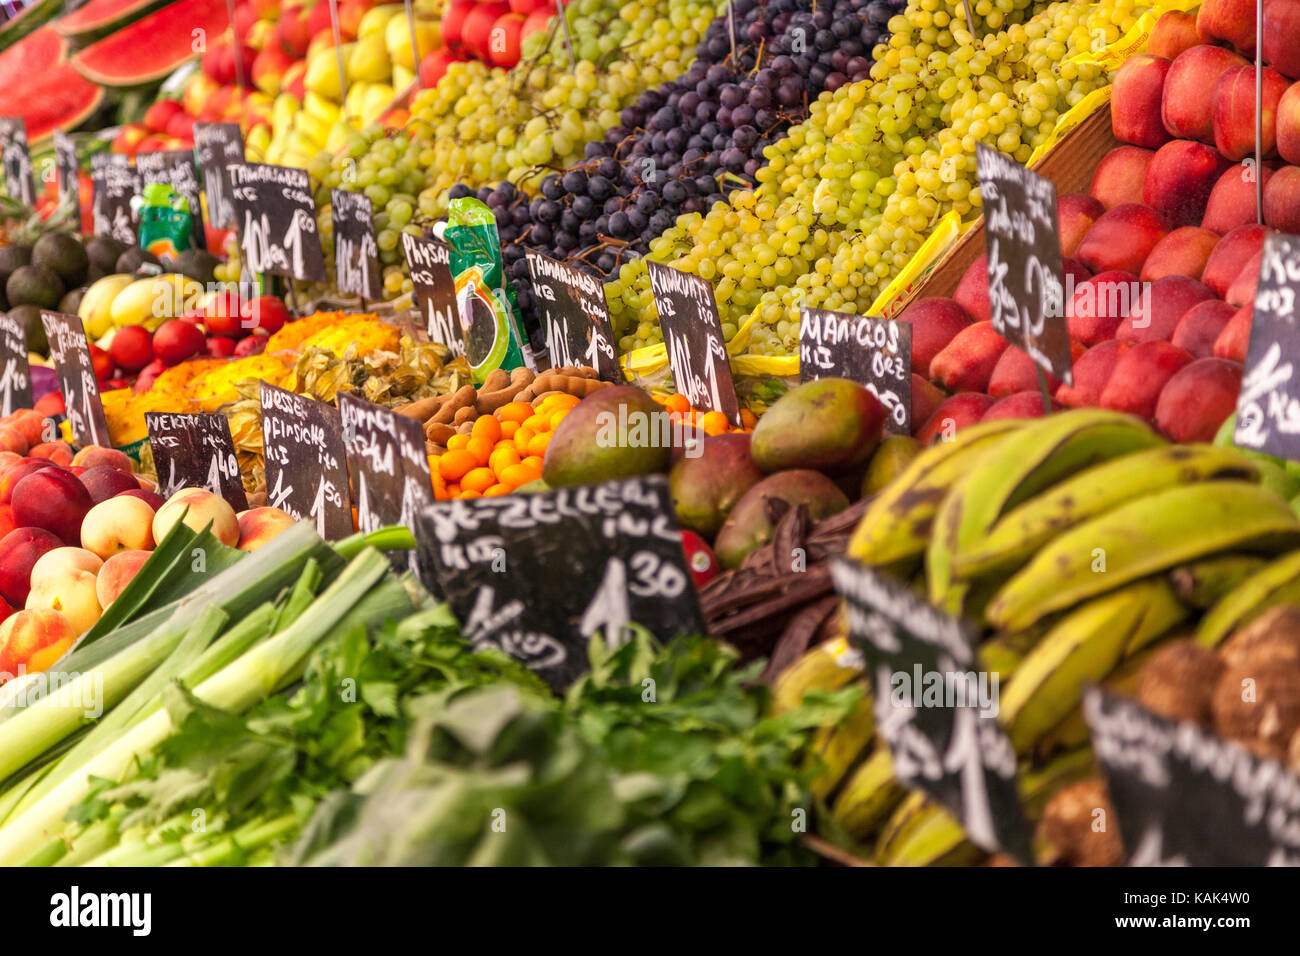 Obst und Gemüse auf einem Markt Foto Stock